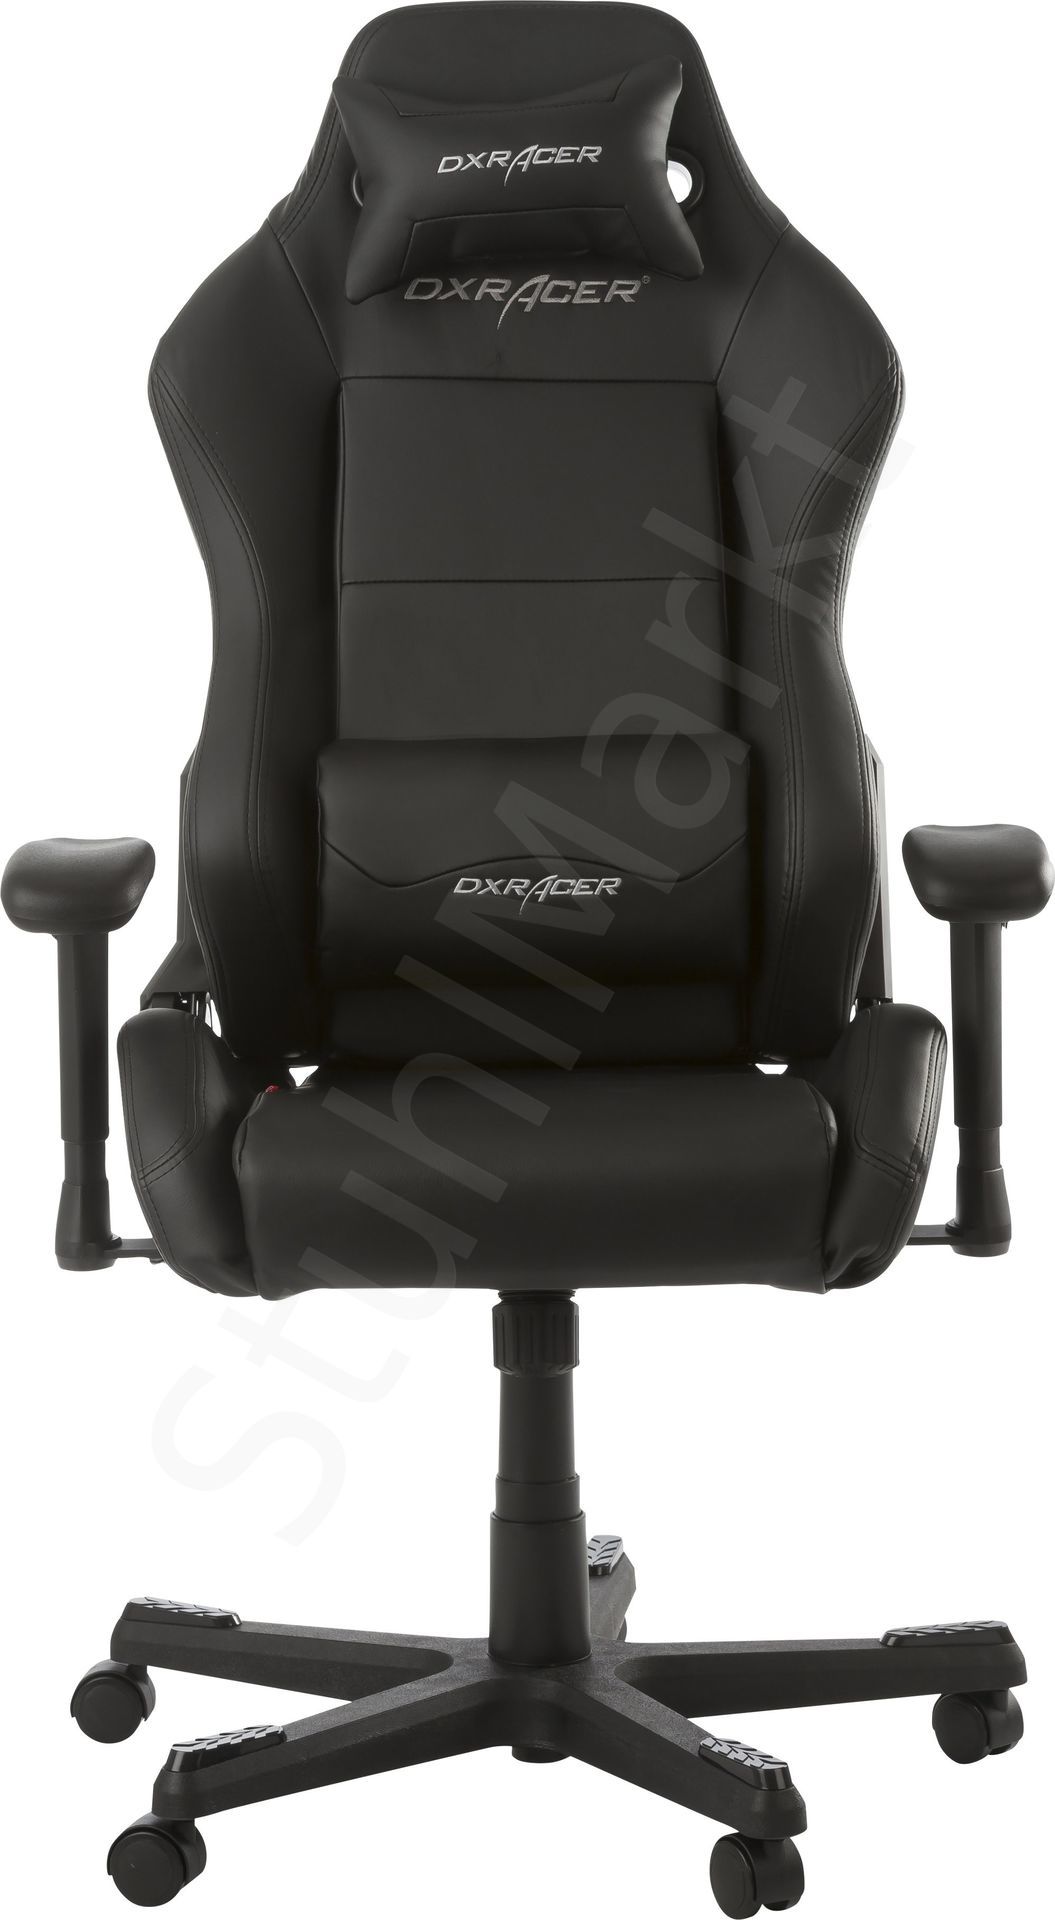  Компьютерное кресло DXRacer OH/DE03/N 6526